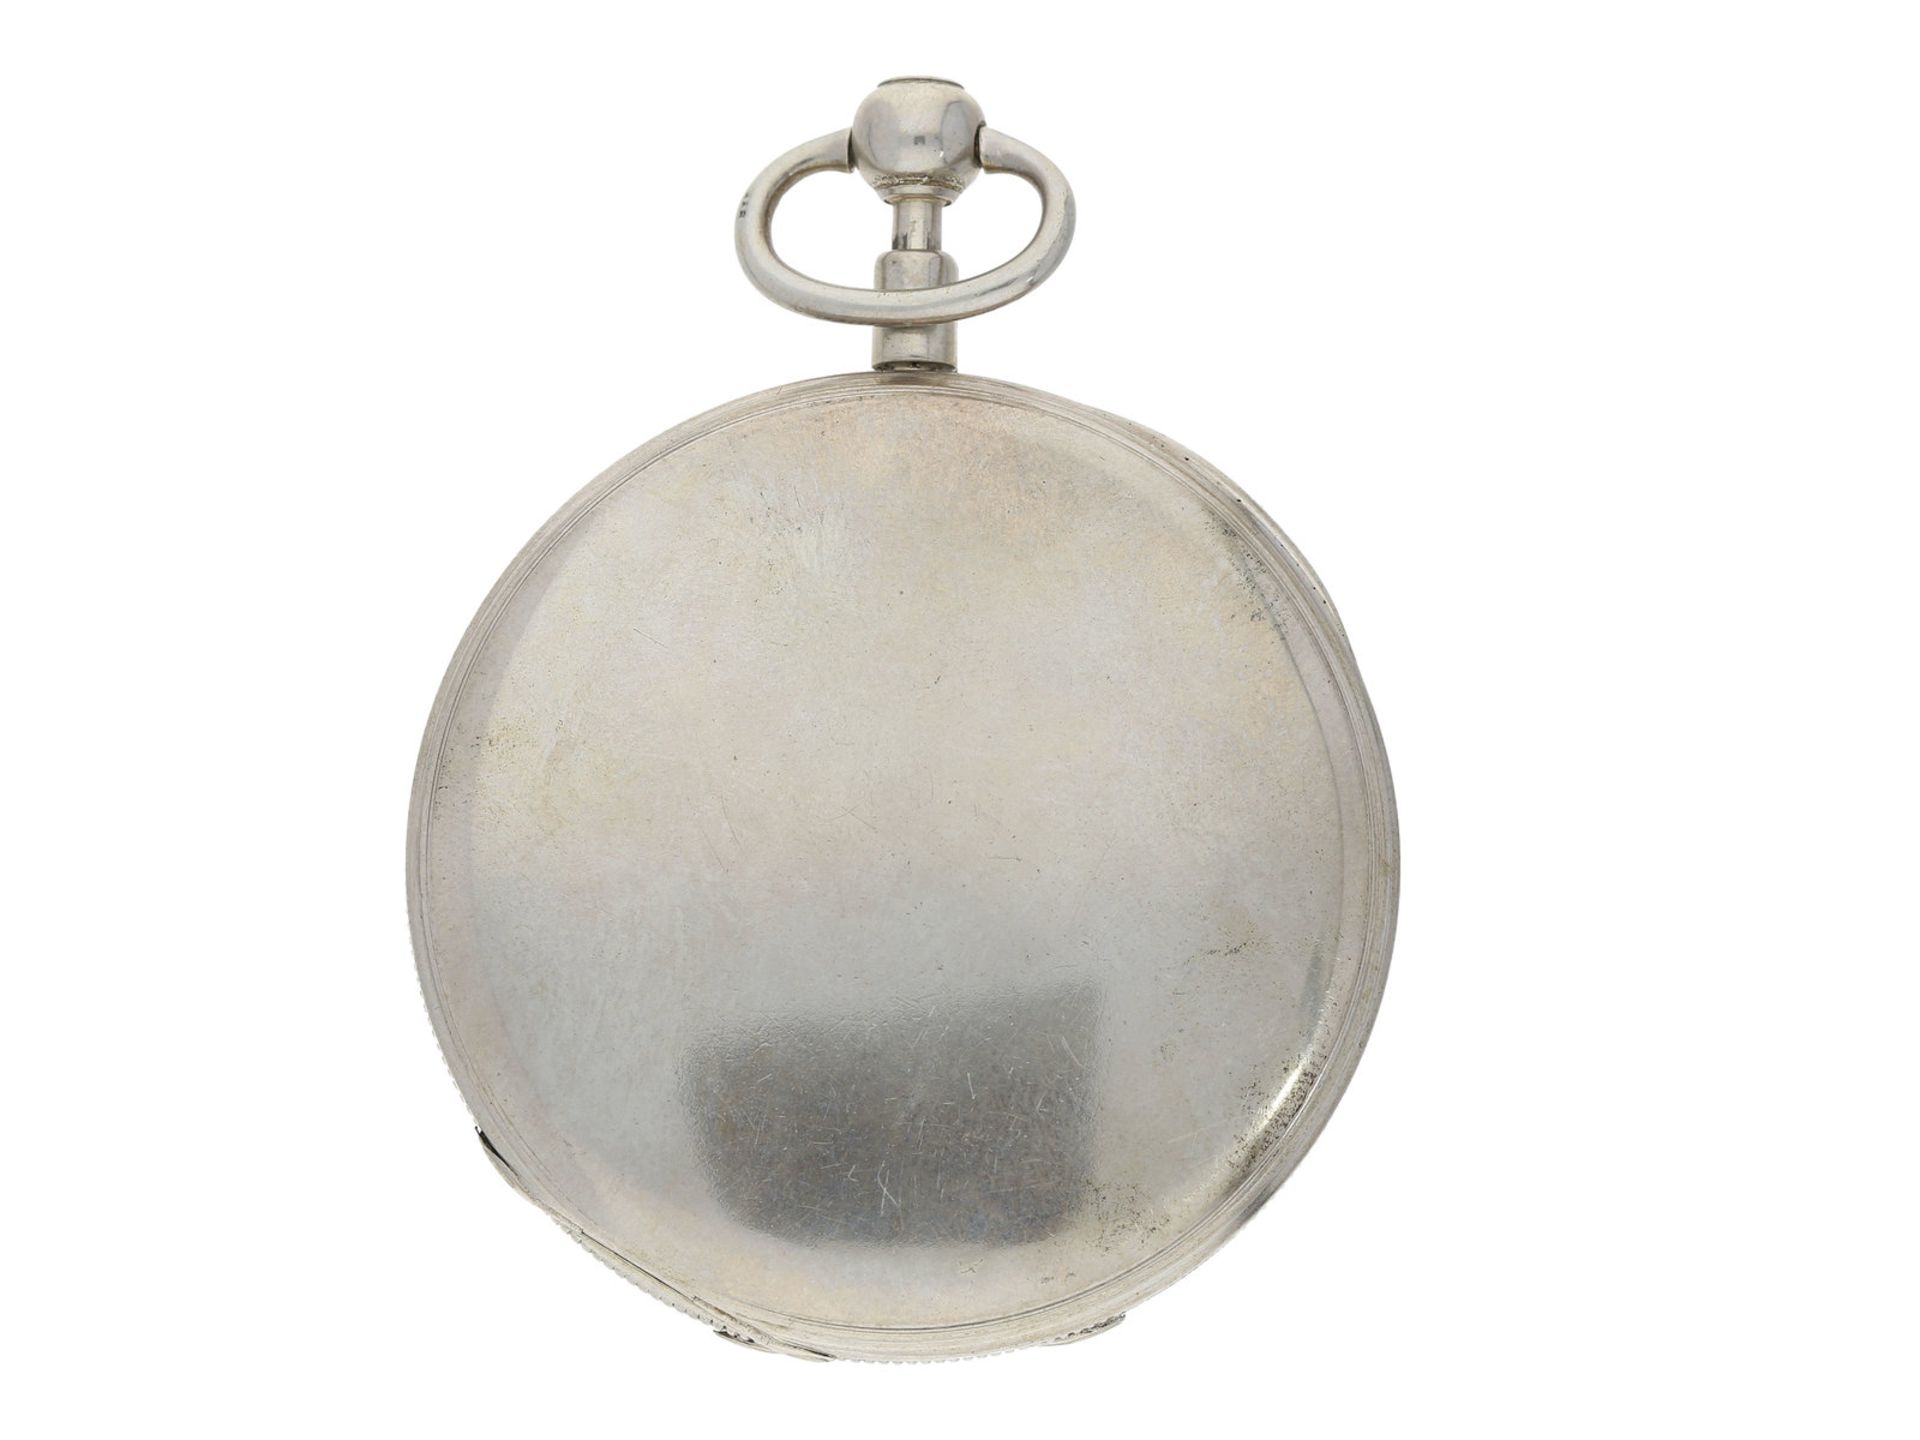 Taschenuhr: sehr attraktive und große Taschenuhr mit 1/4h-Repetition, ca. 1850 - Bild 2 aus 4